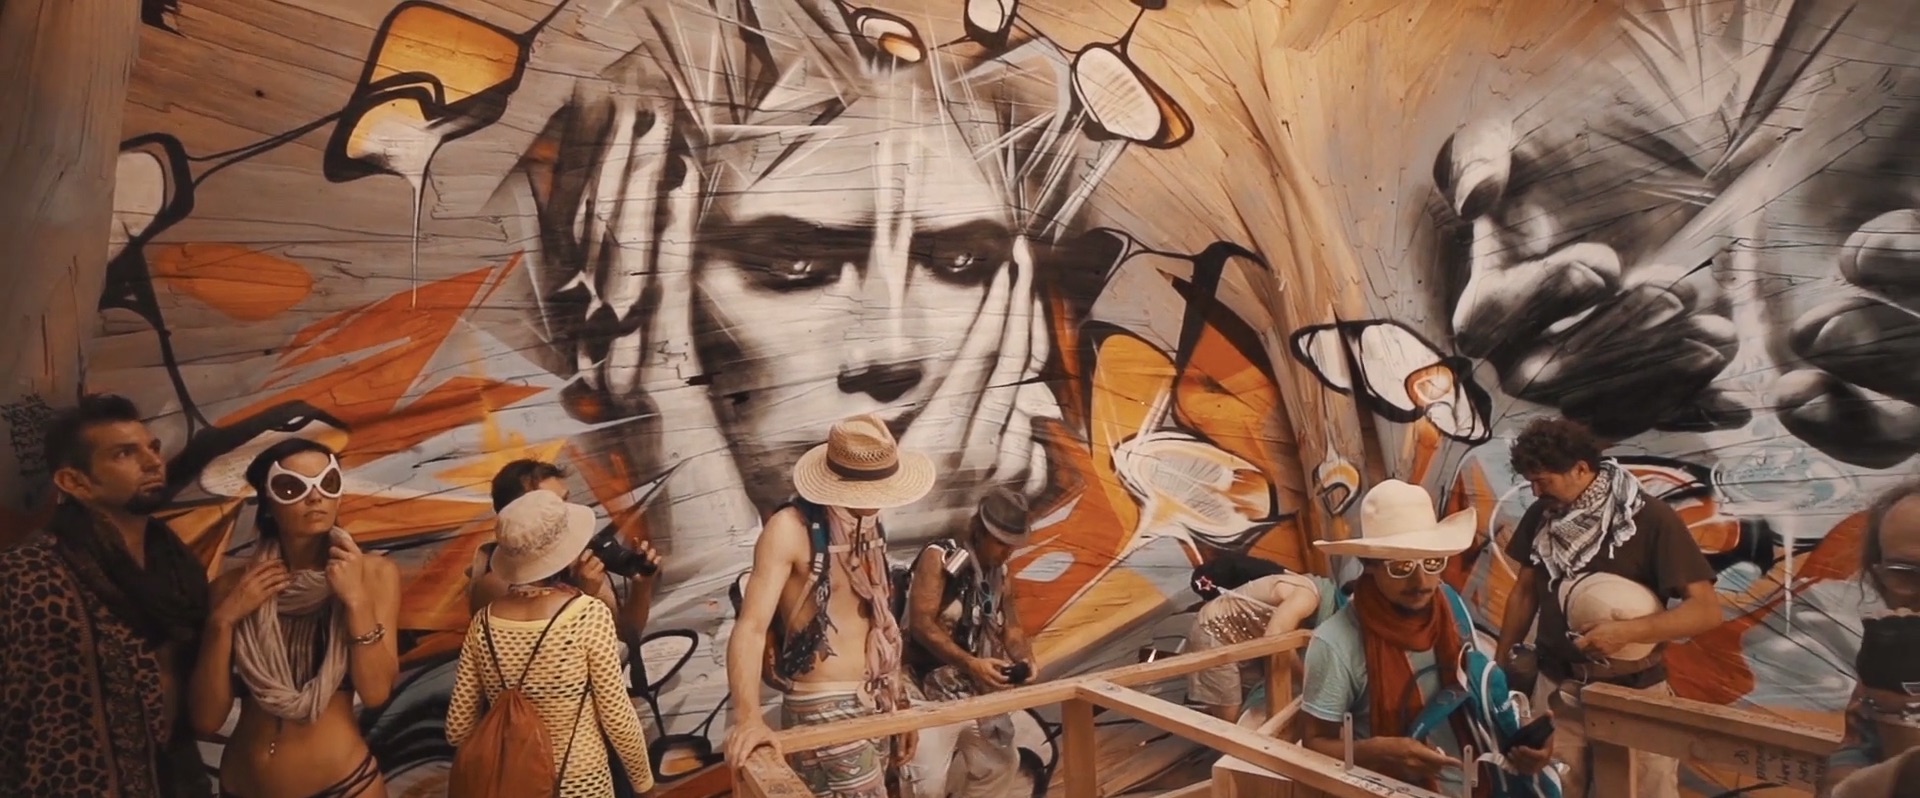 Art of Burning Man 2014_6